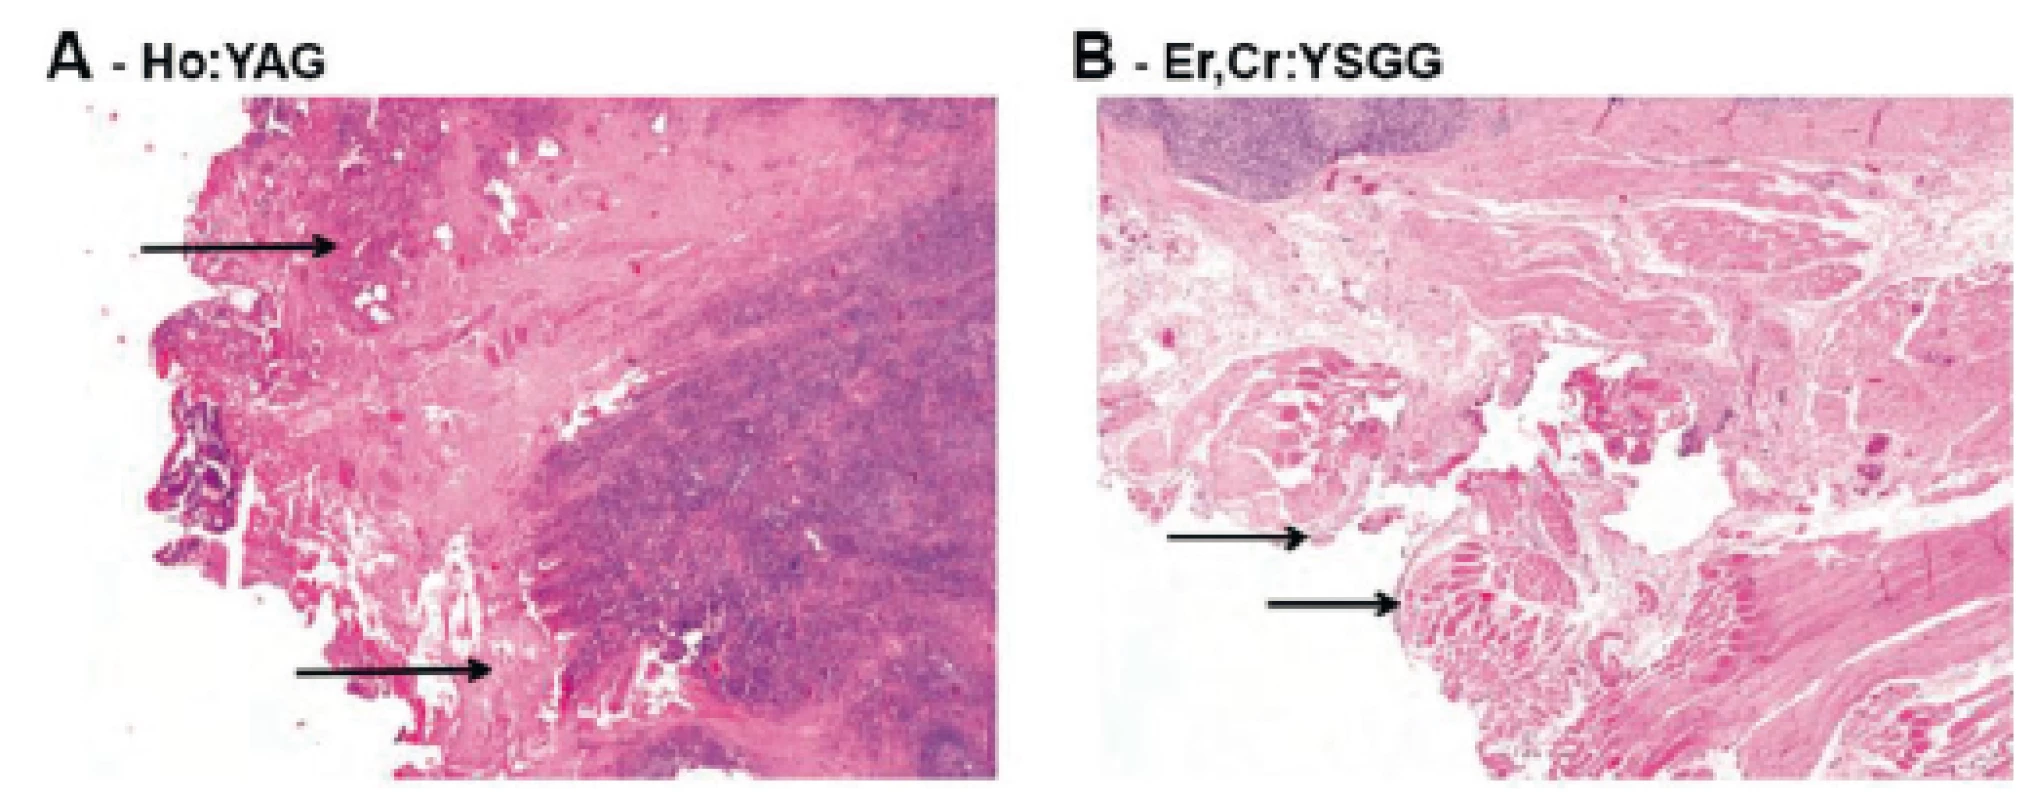 Histologické vyšetření tkáně po tonzilektomii Ho:YAG a Er,Cr:YSGG.